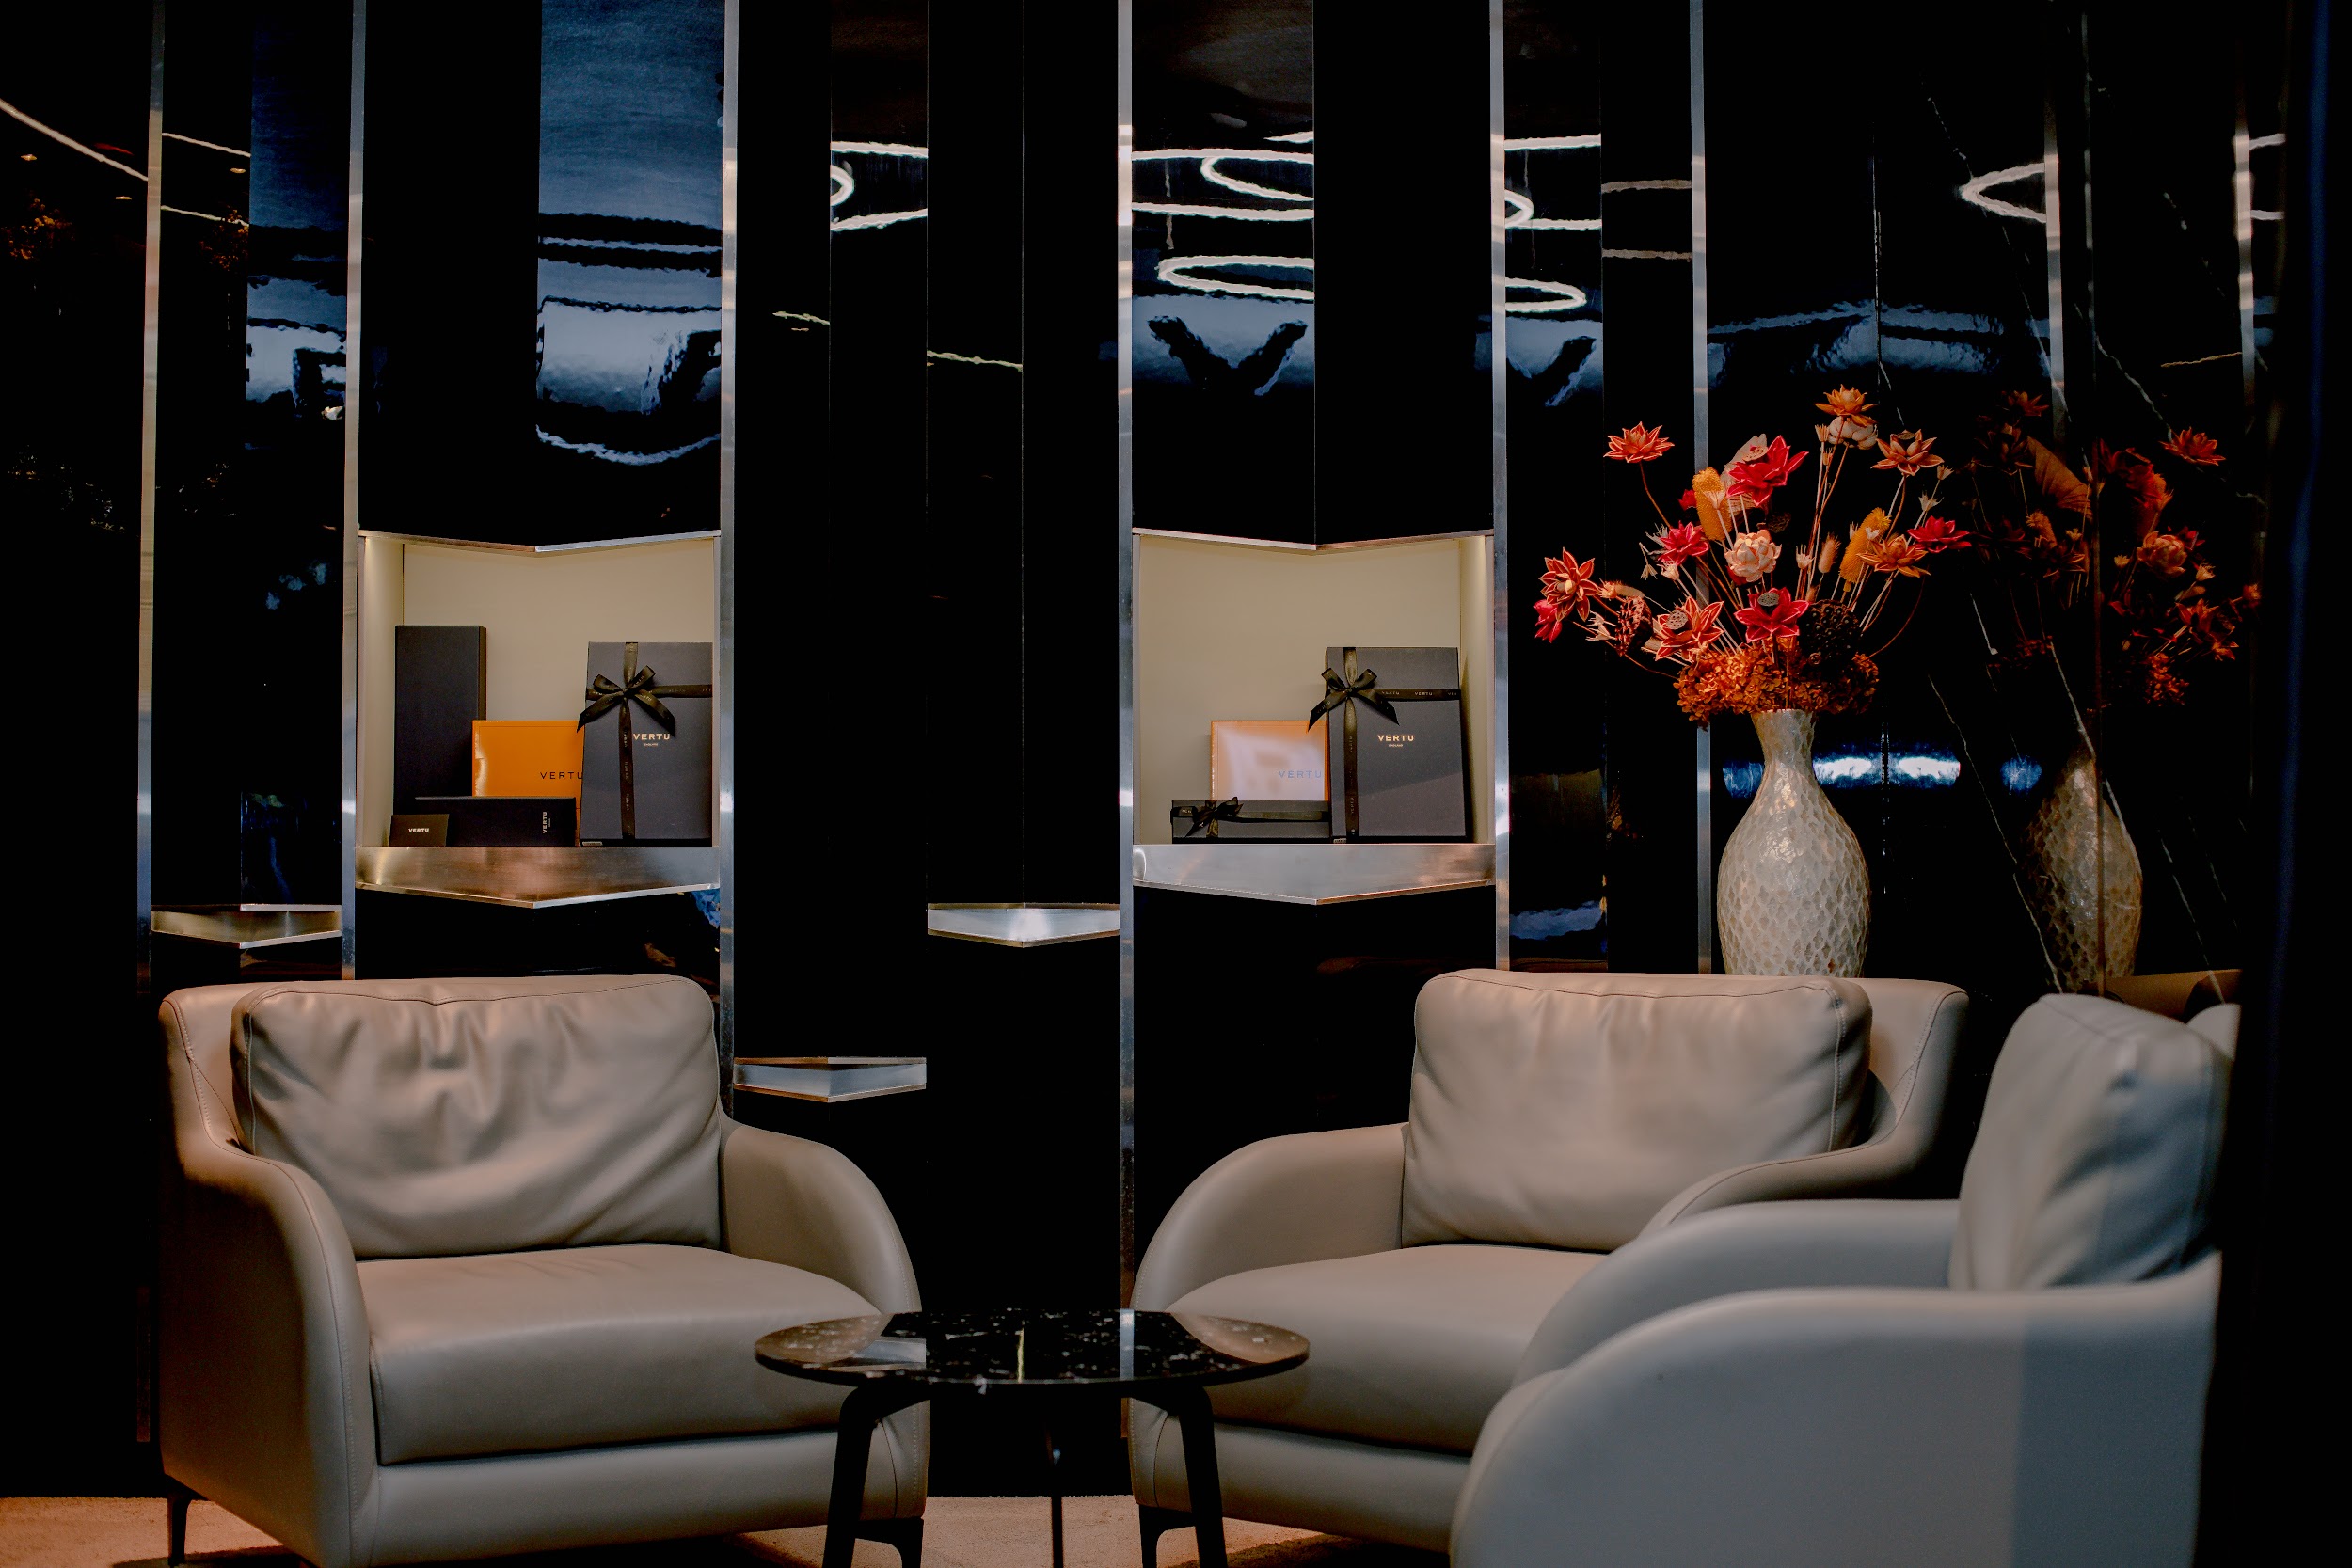 Không gian bên trong cửa hàng Vertu đơn với phong cách sang trọng, đẳng cấp nhưng vẫn đảm bảo sự riêng tư cho khách hàng.